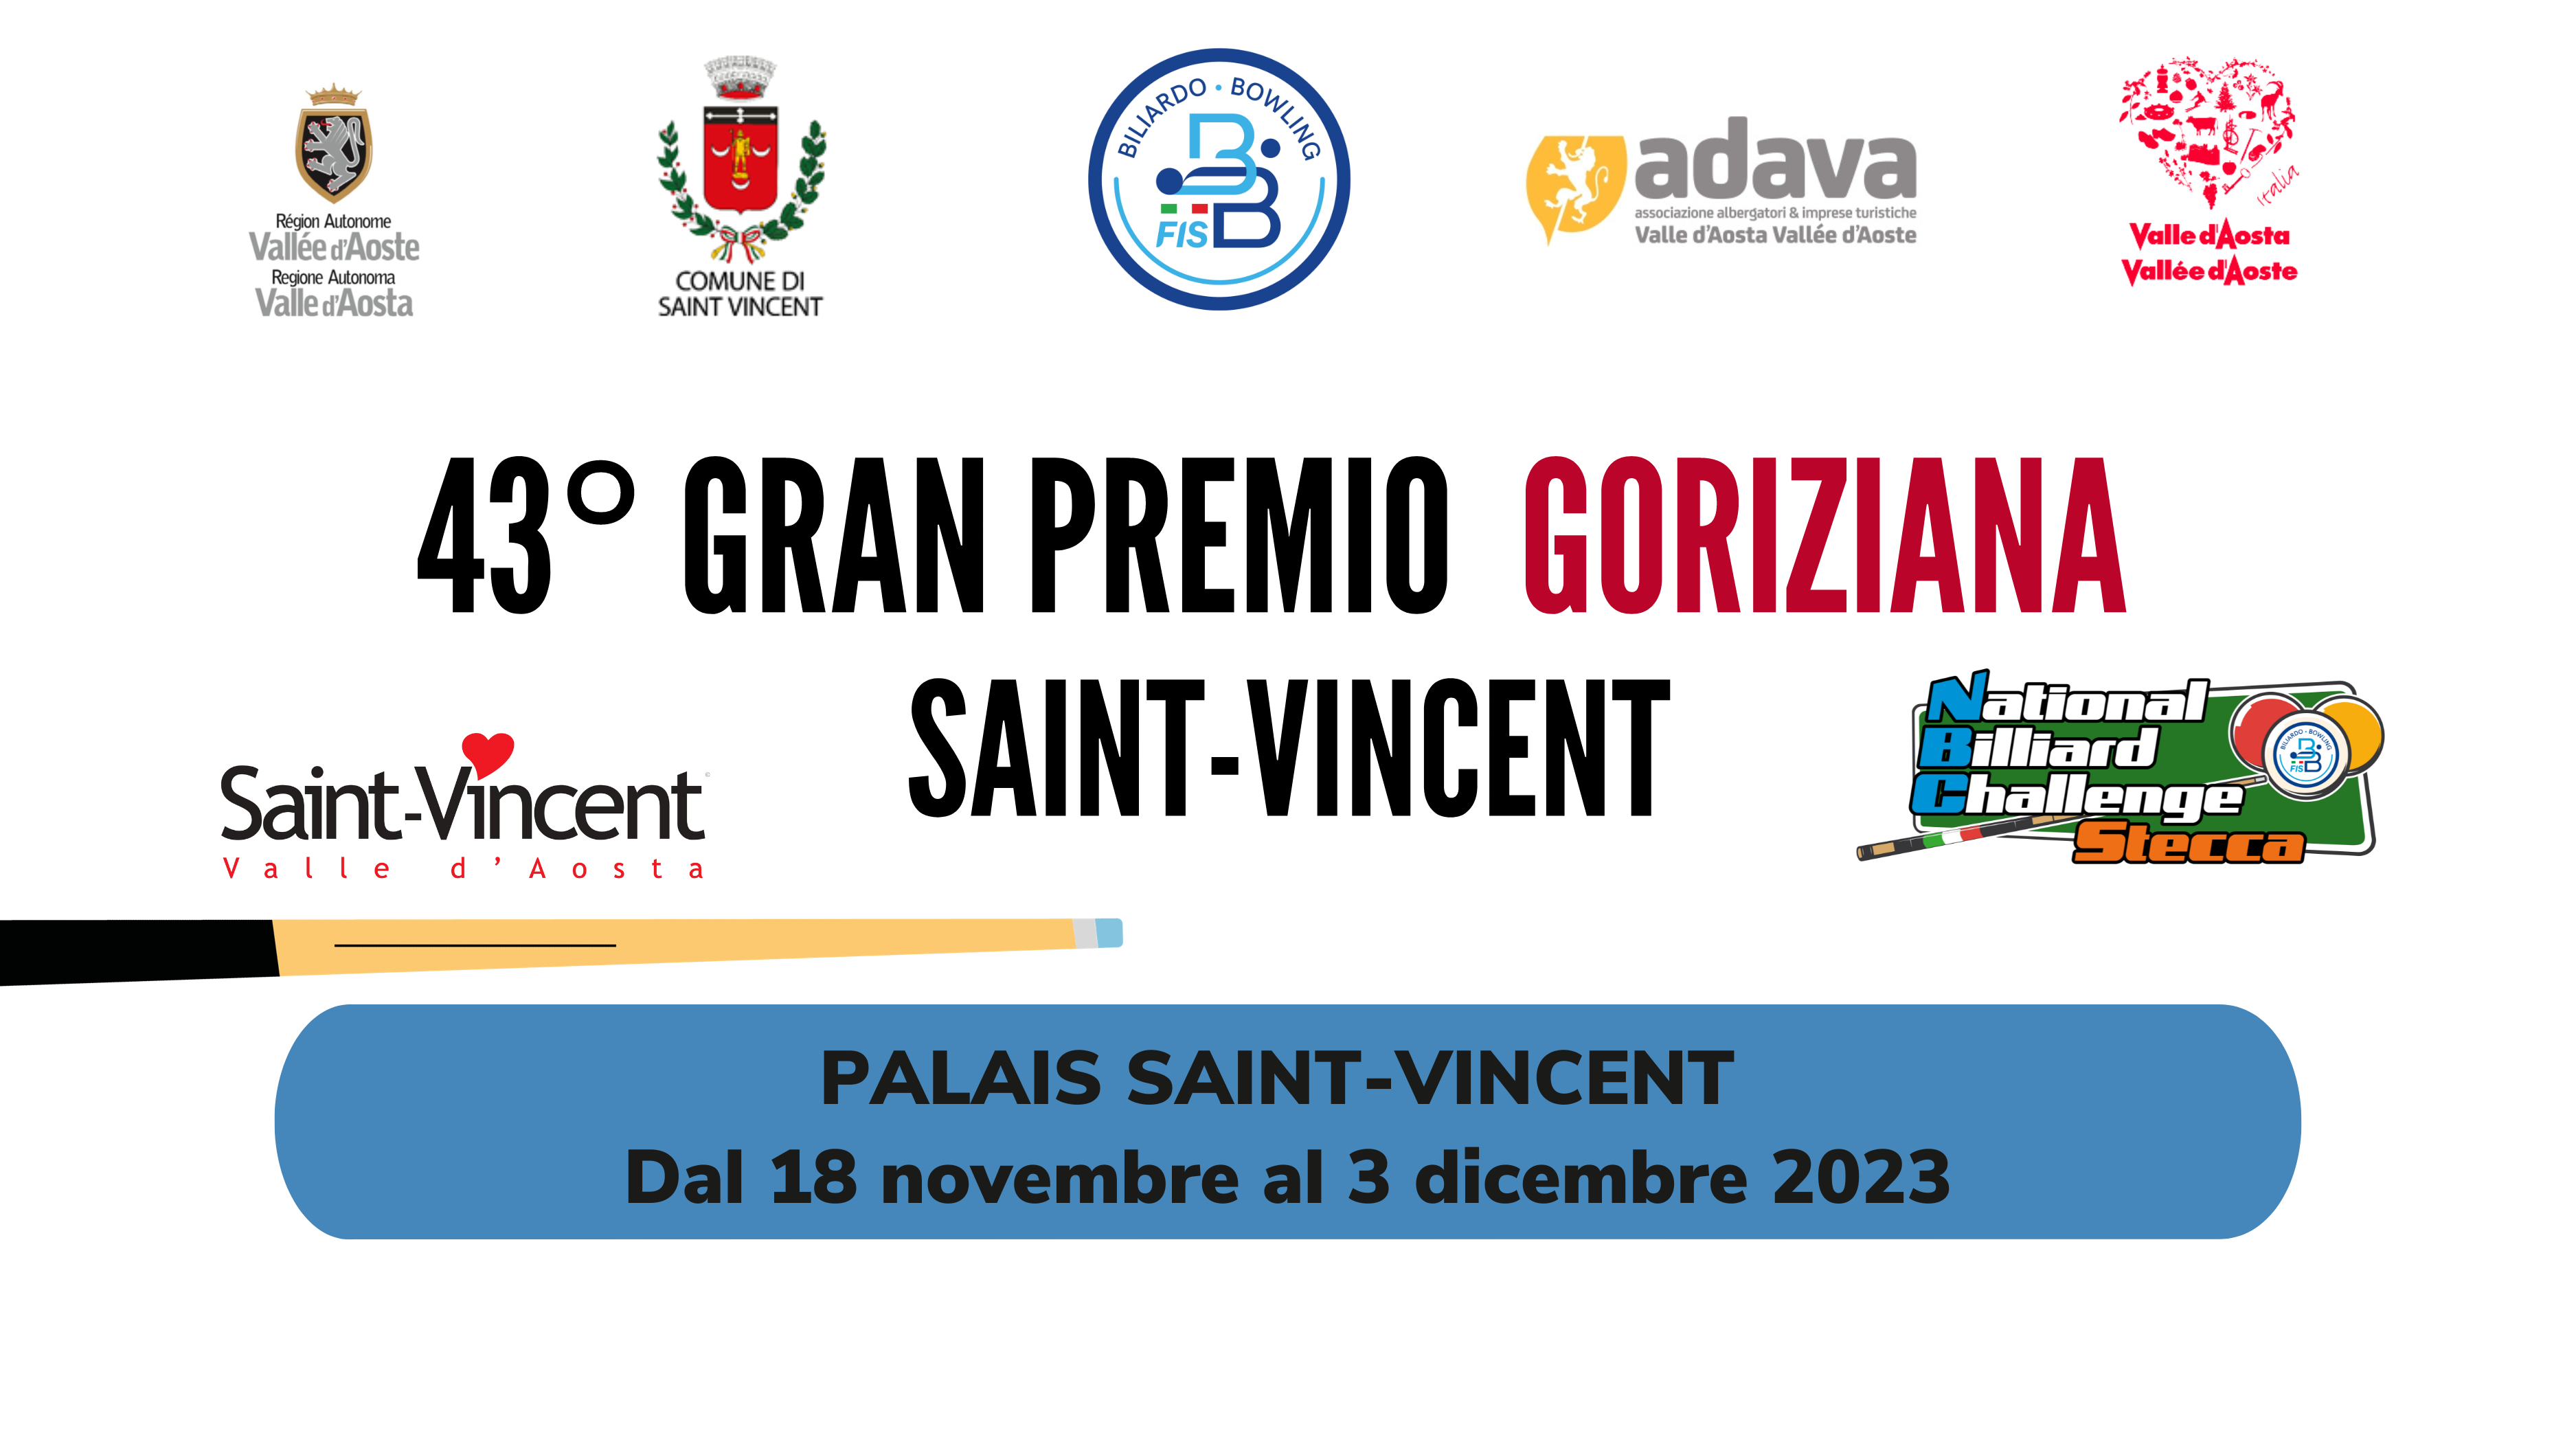 43° GRAN PREMIO GORIZIANA - SAINT-VINCENT 2023: APERTURA ISCRIZIONI